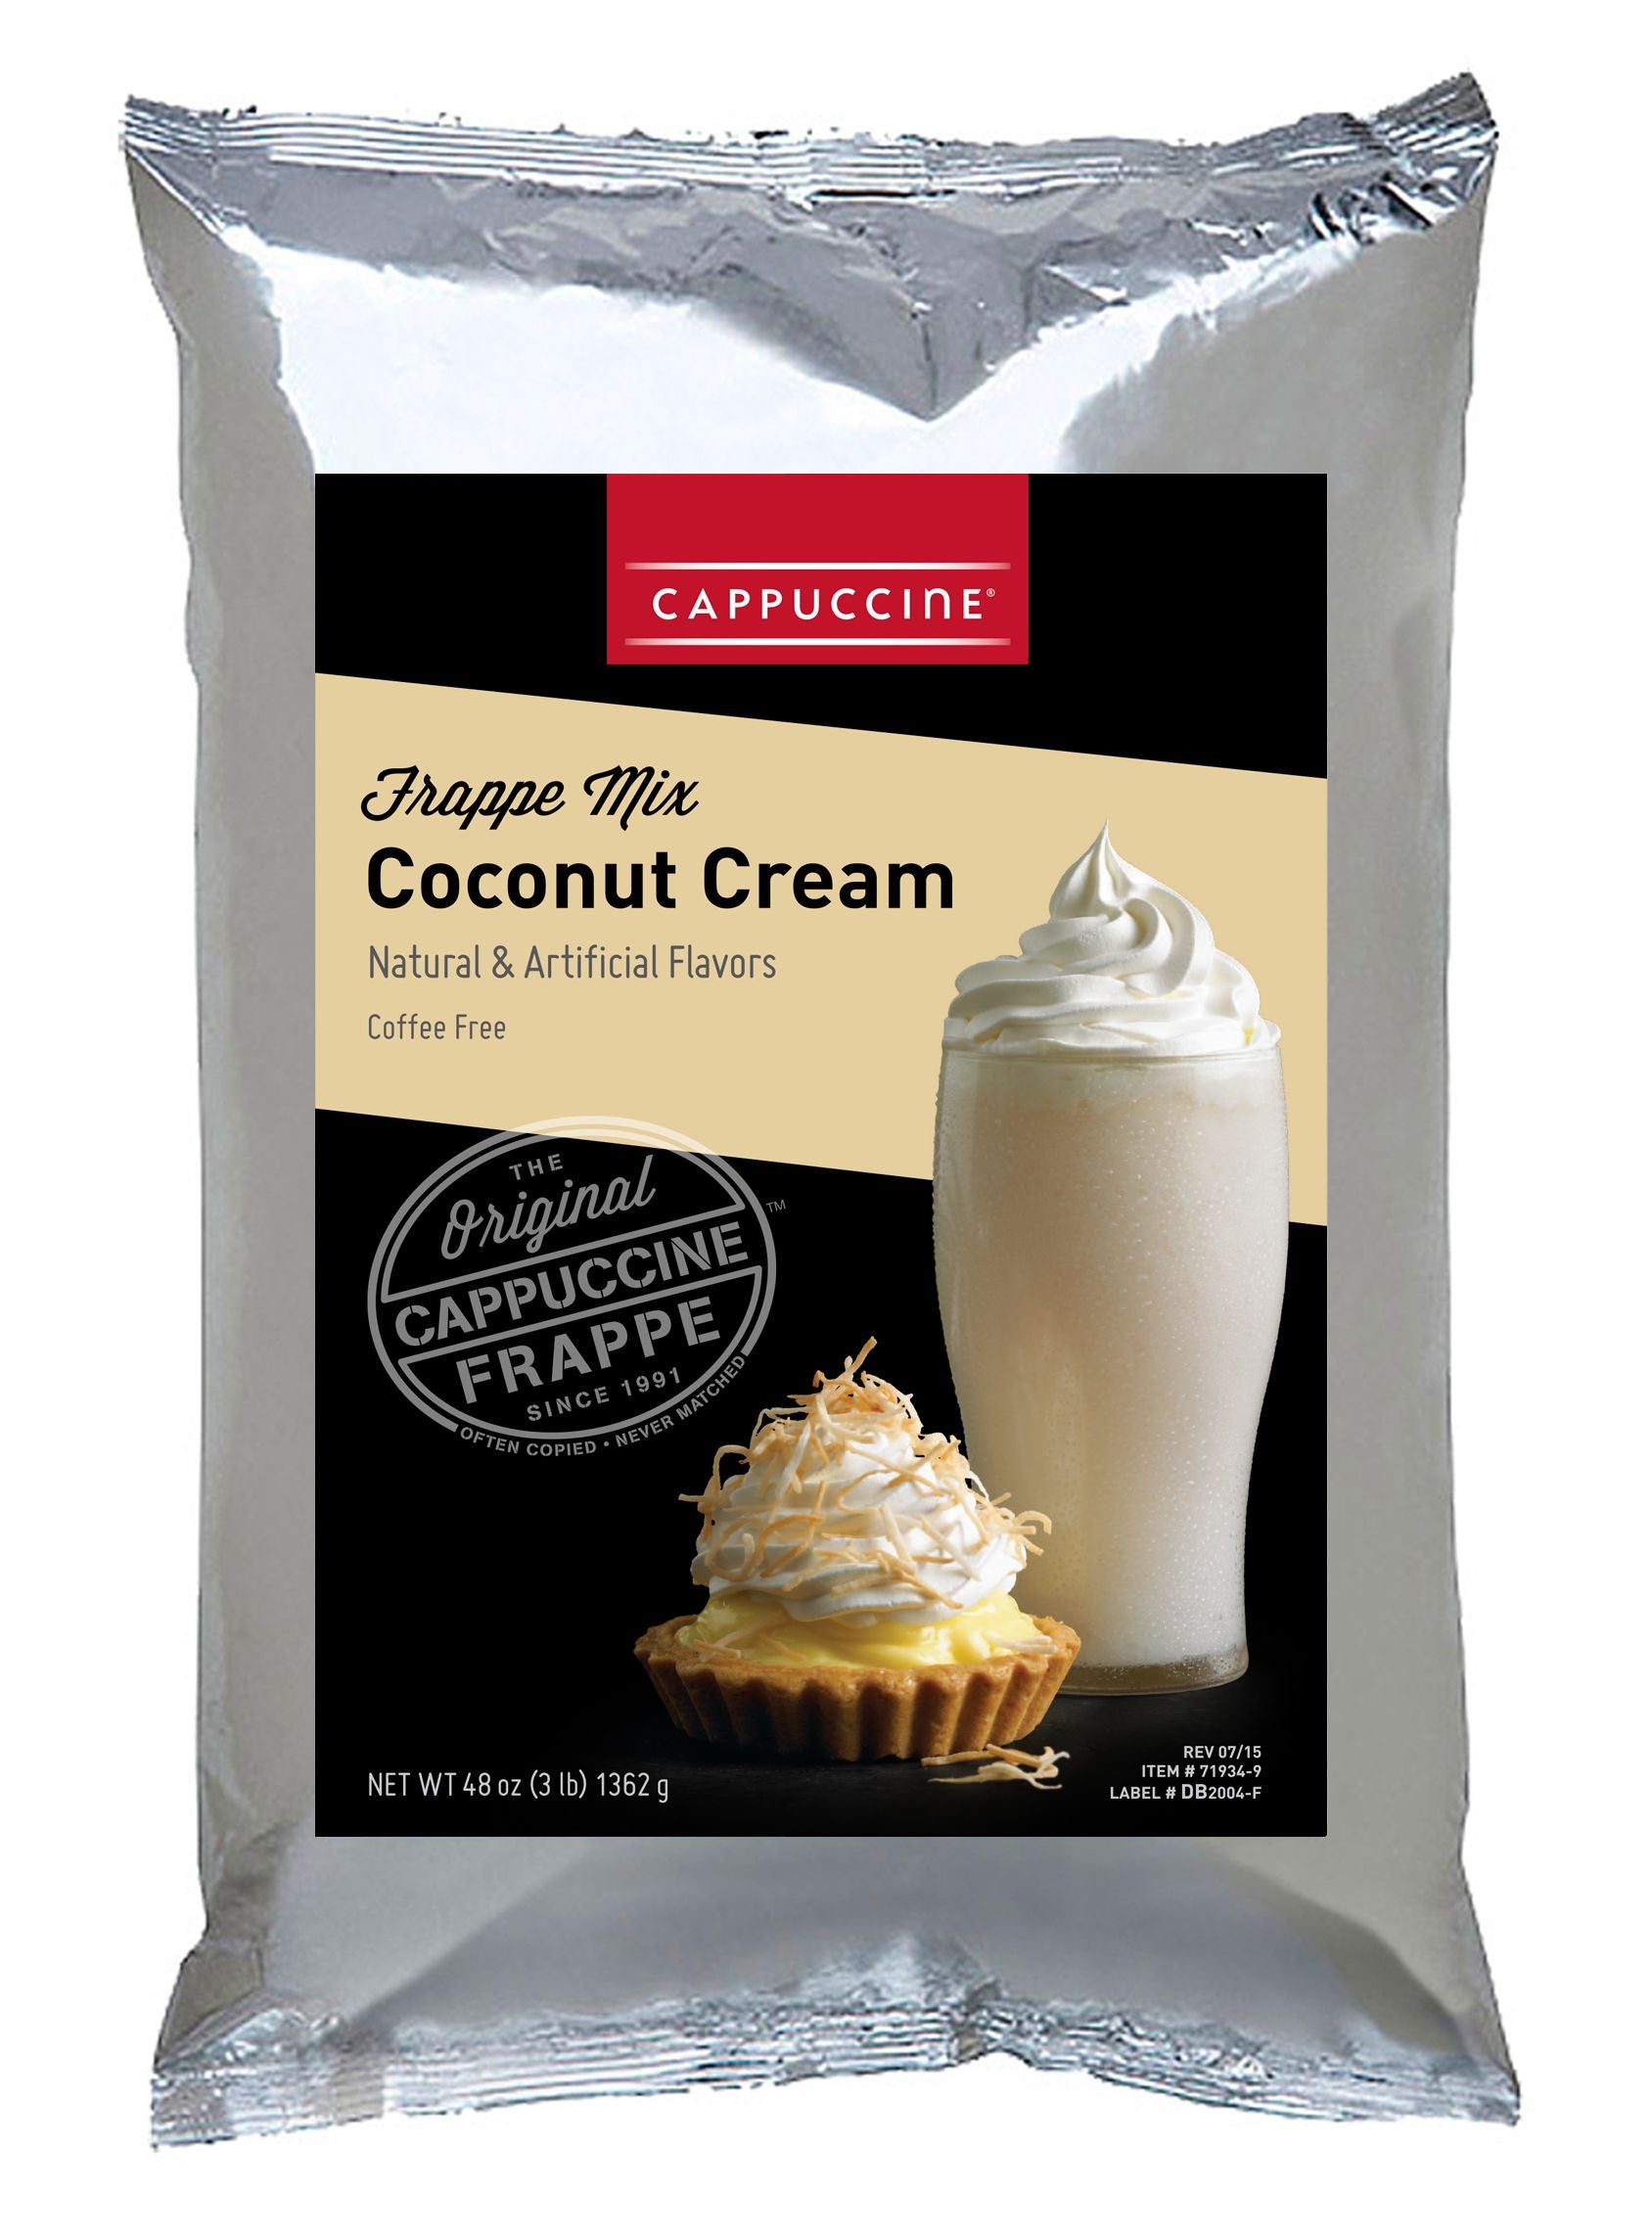 Cappuccine Frappe Mix - 3 lb. Bulk Bag: Coconut Cream